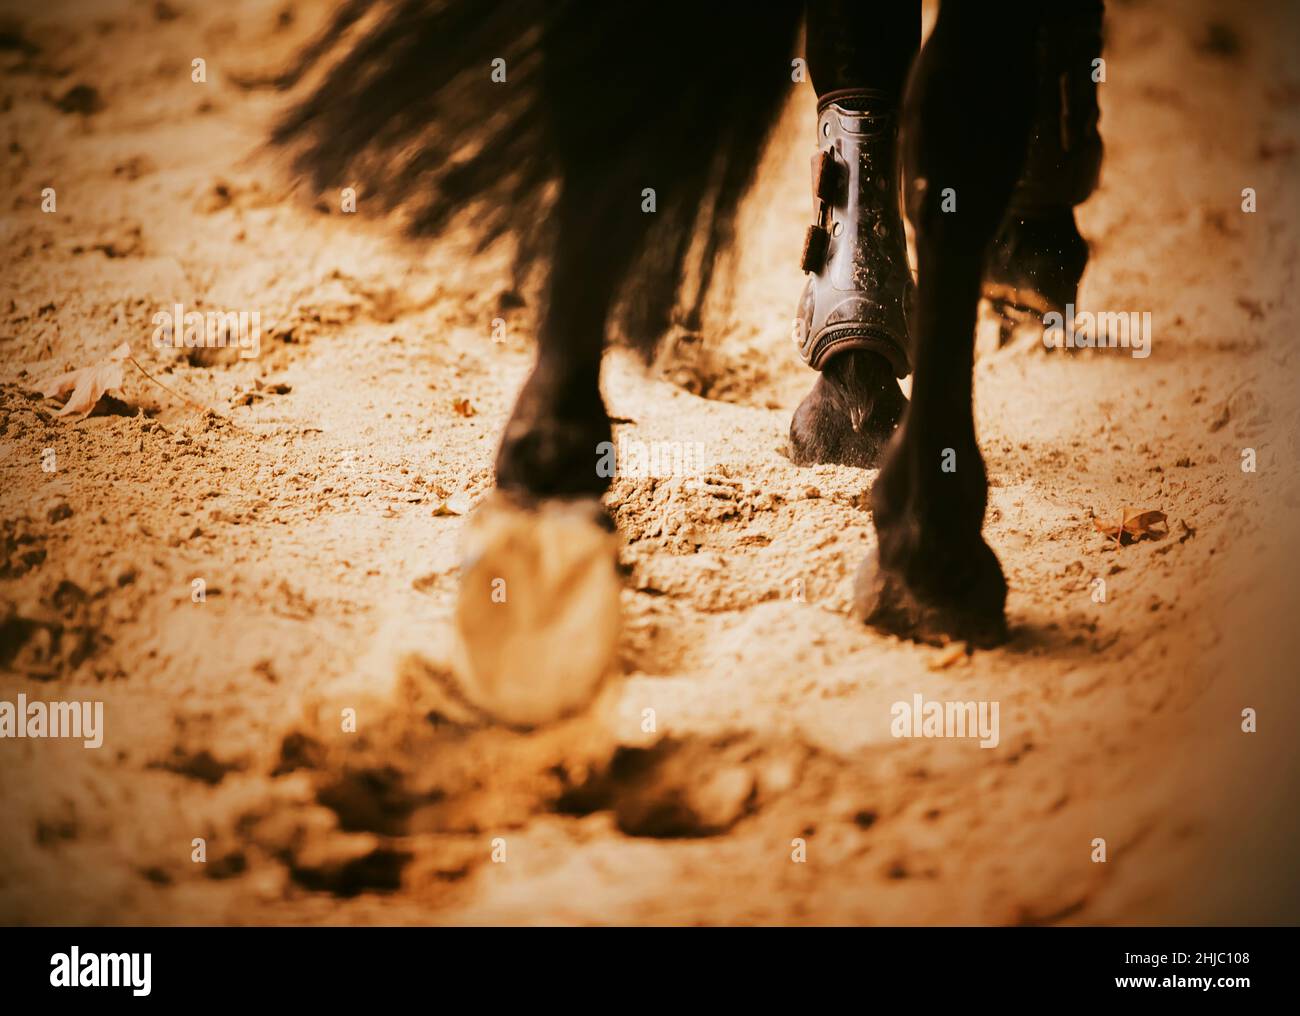 Eine Rückansicht eines schwarzen Pferdes mit einem langen Schwanz, der galoppiert, auf Sand tretende Hufe und Herbstblätter tritt. Reitsport. Stockfoto